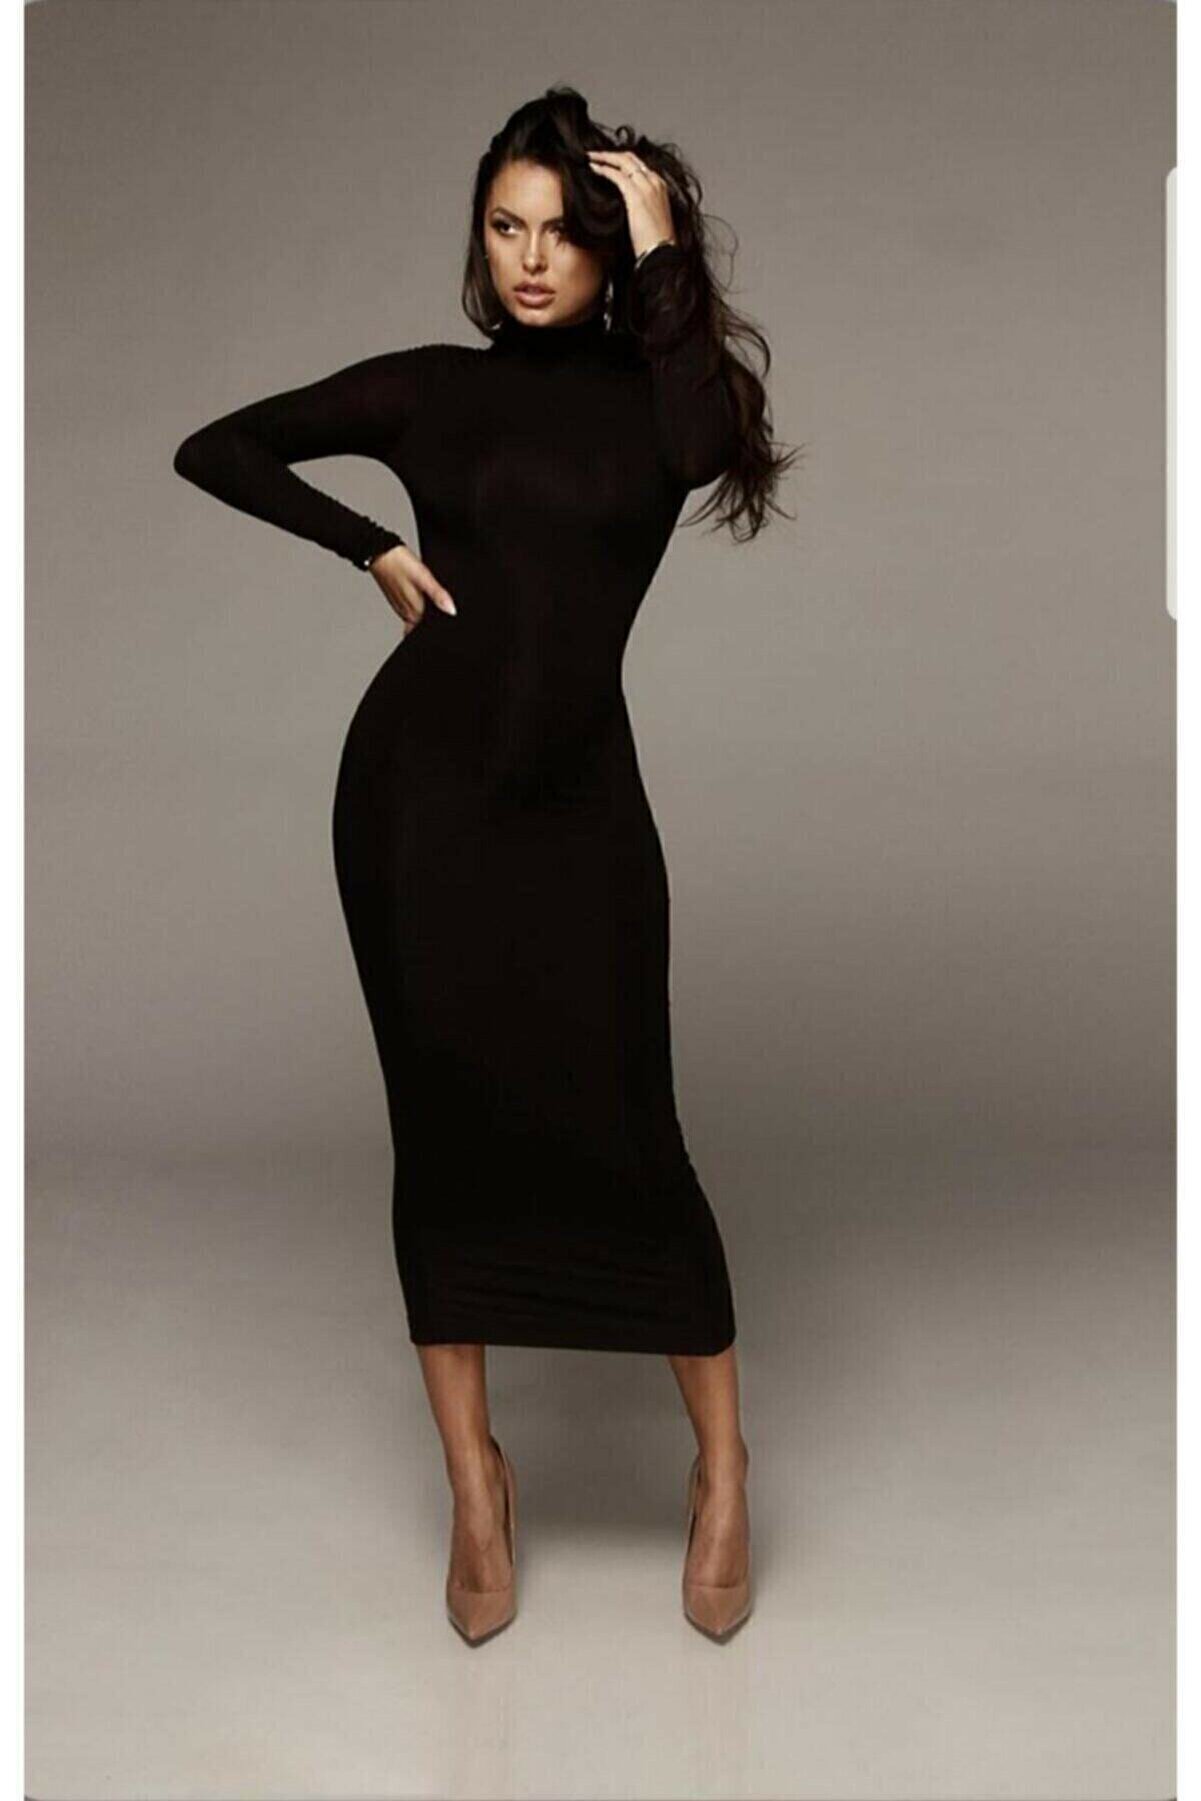 Maxi İdol Kadın Siyah Balıkçı Yaka Kalem Model Triko Elbise Boy 130 Cm